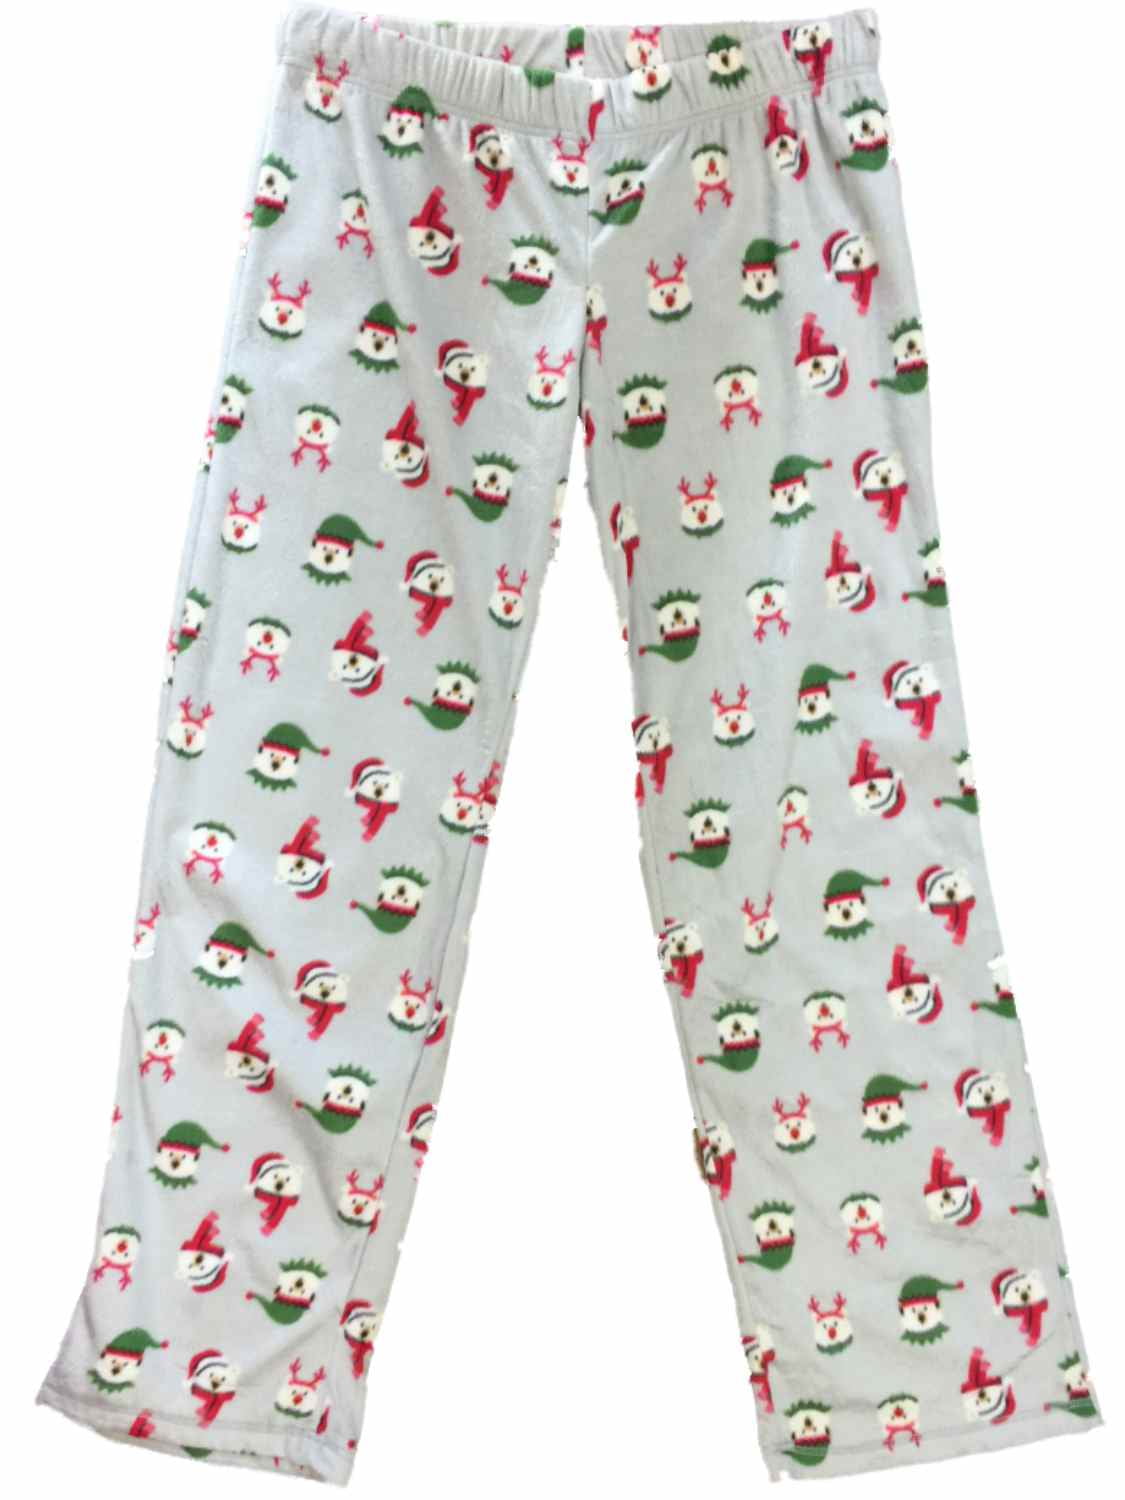 Womens Polar Bear Santa Elf Christmas Fleece Sleep Pants Holiday Pajama Bottoms 